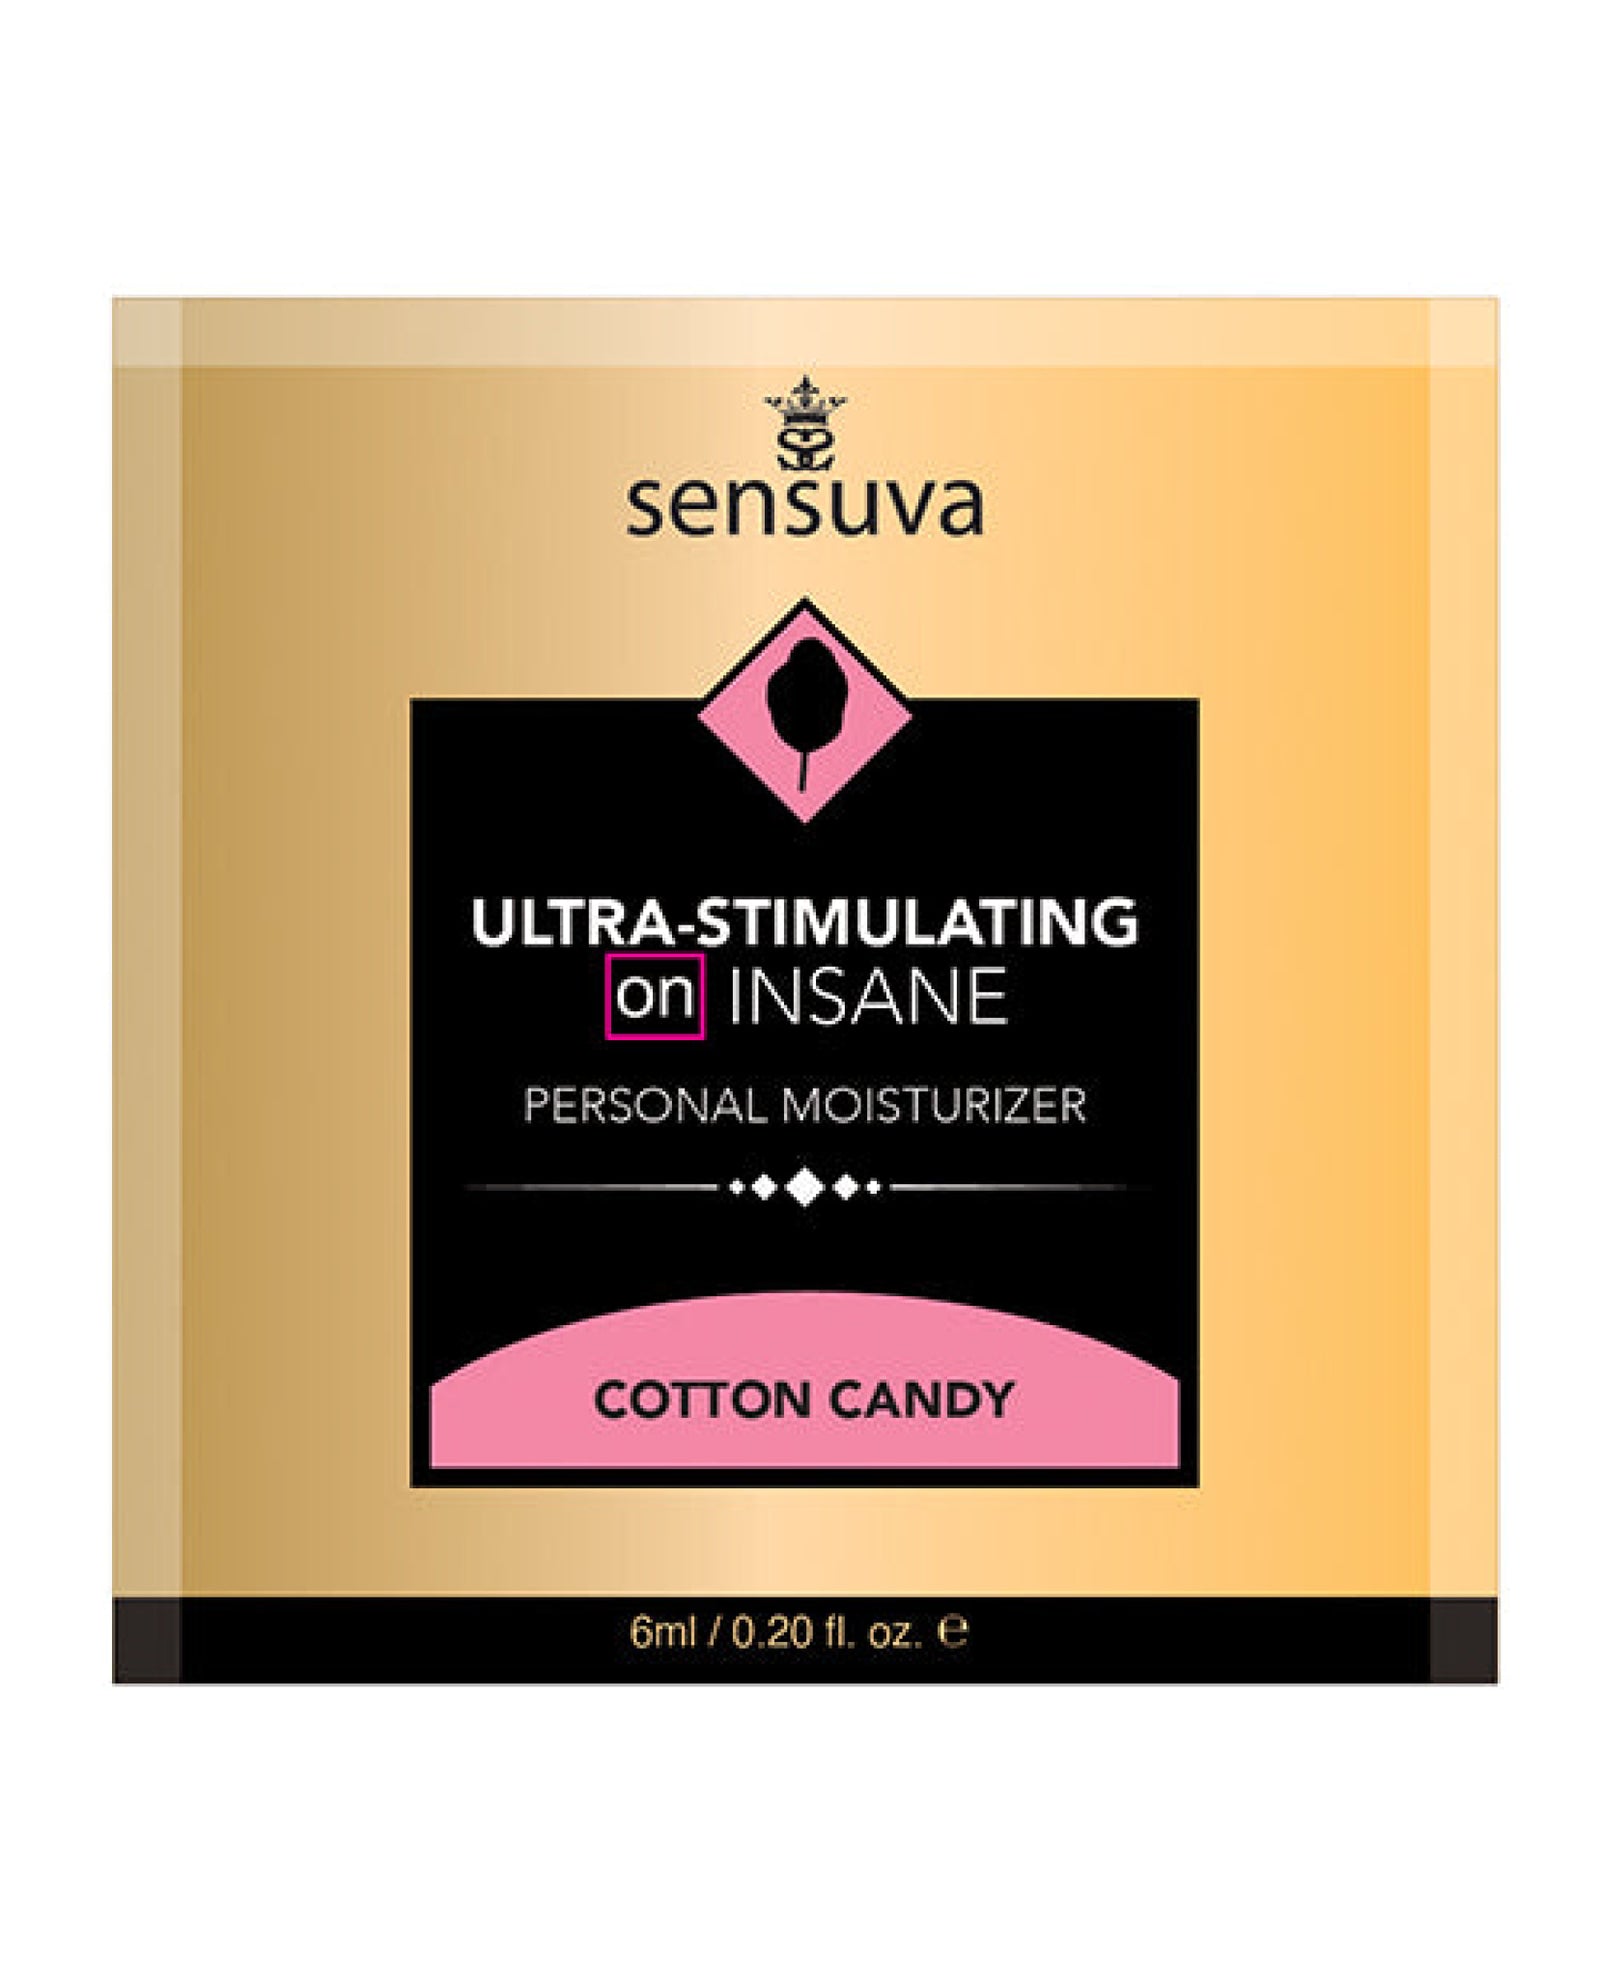 On Insane Ultra Stimulating Personal Moisturizer Single Use Packet - 6 Ml Cotton Candy Sensuva